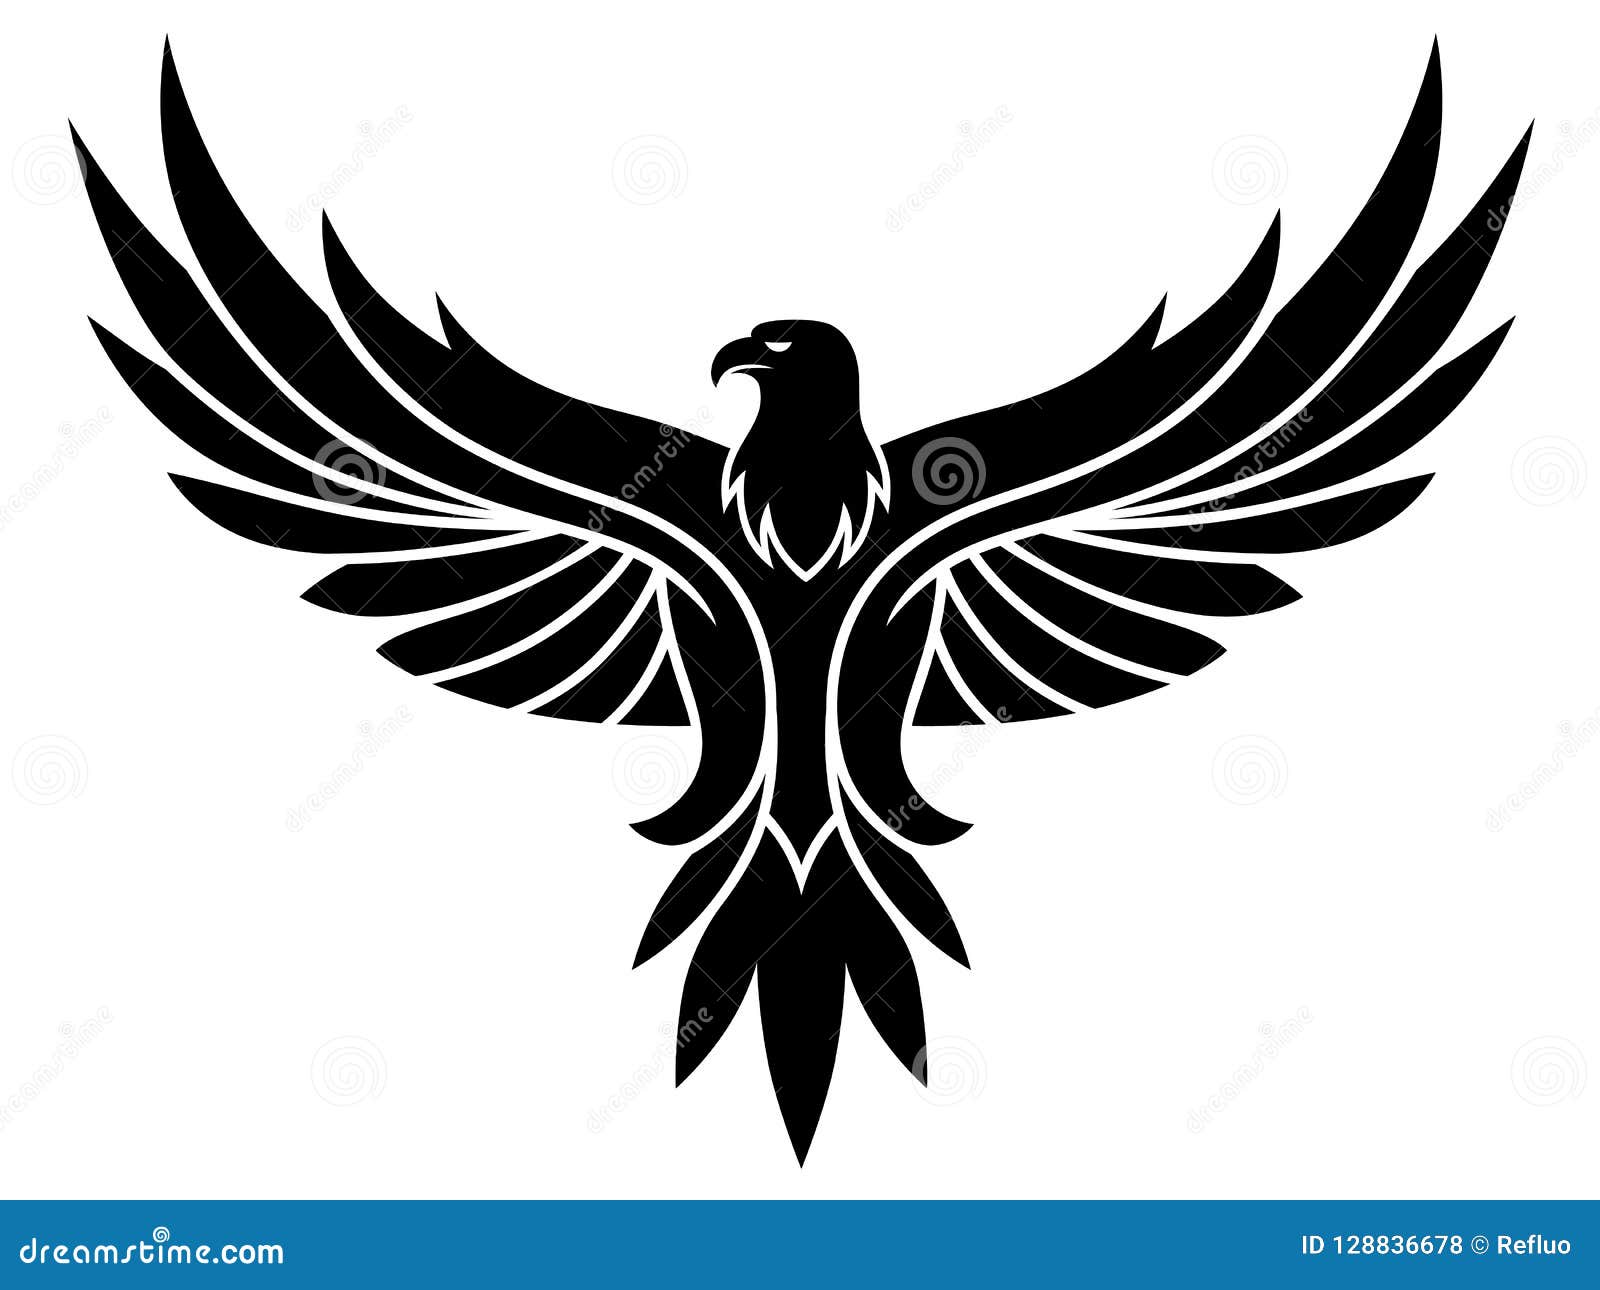 https://thumbs.dreamstime.com/z/black-eagle-emblem-vector-white-background-128836678.jpg